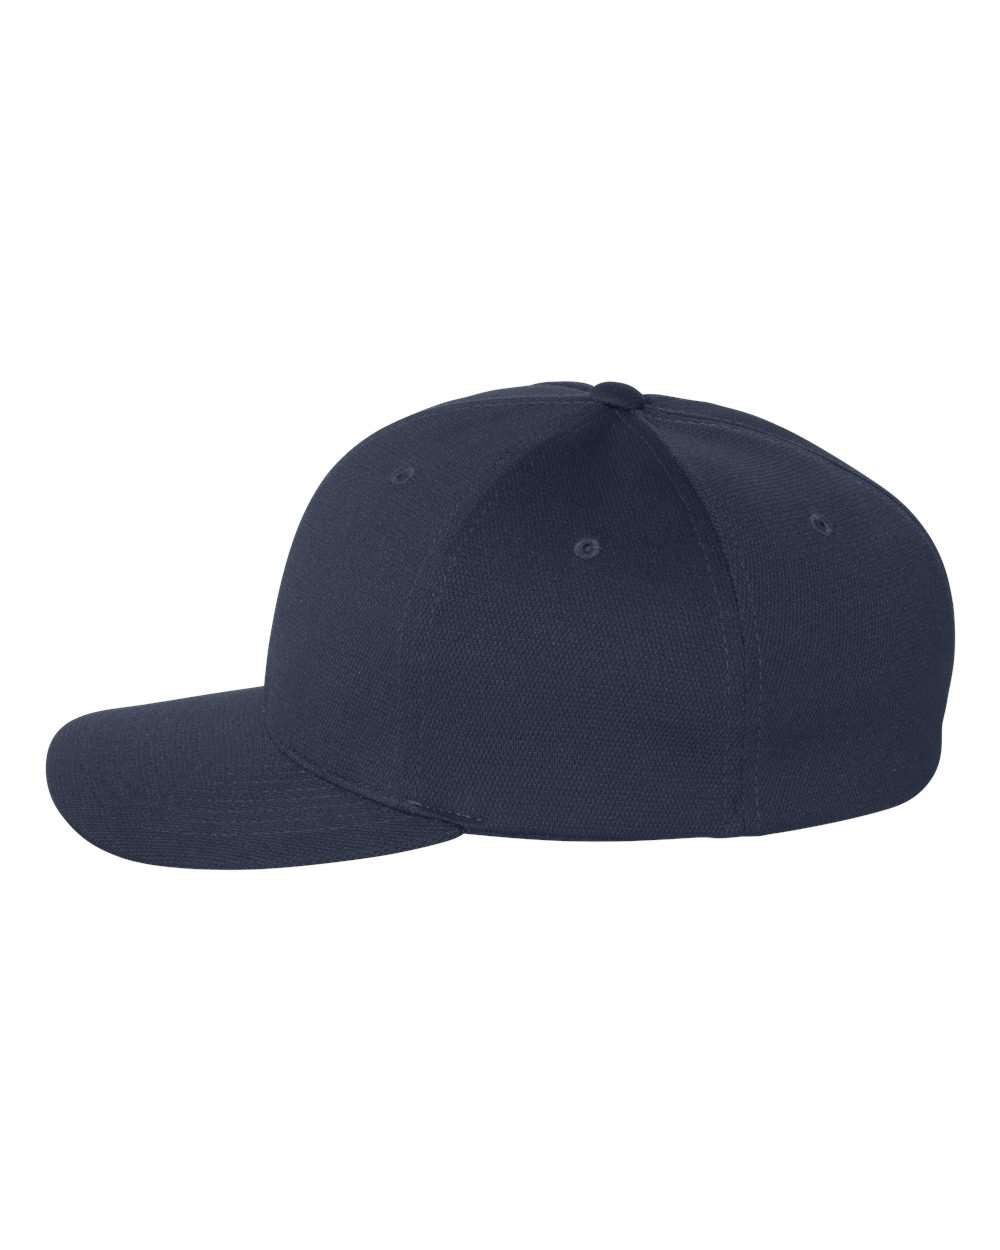 Flexfit Cool & Dry Sport Cap 6597 #color_Navy